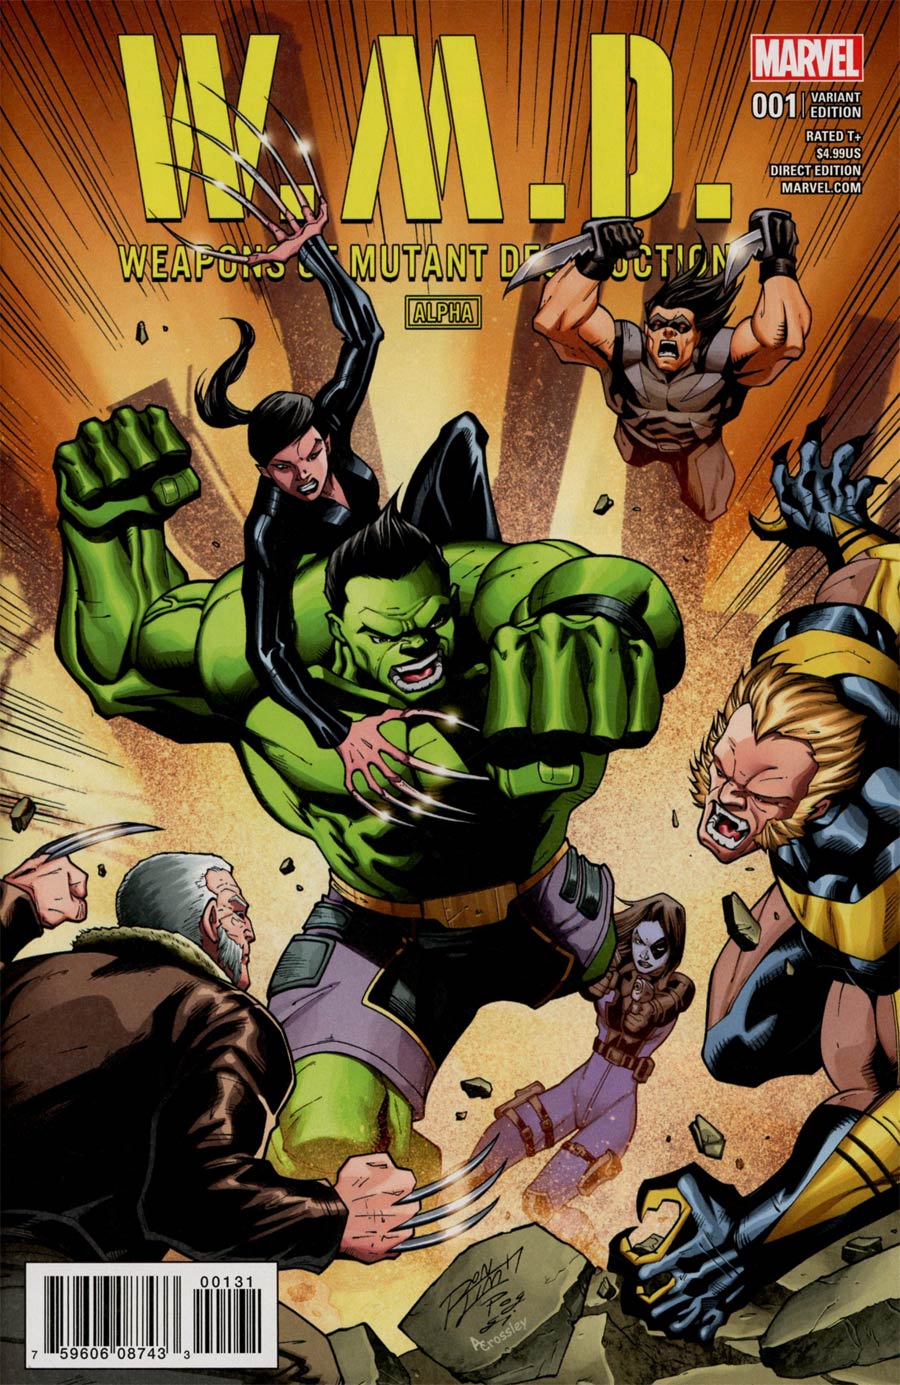 Weapons Of Mutant Destruction Alpha #1 Cover C Variant Ron Lim Cover (Weapons Of Mutant Destruction Part 1)